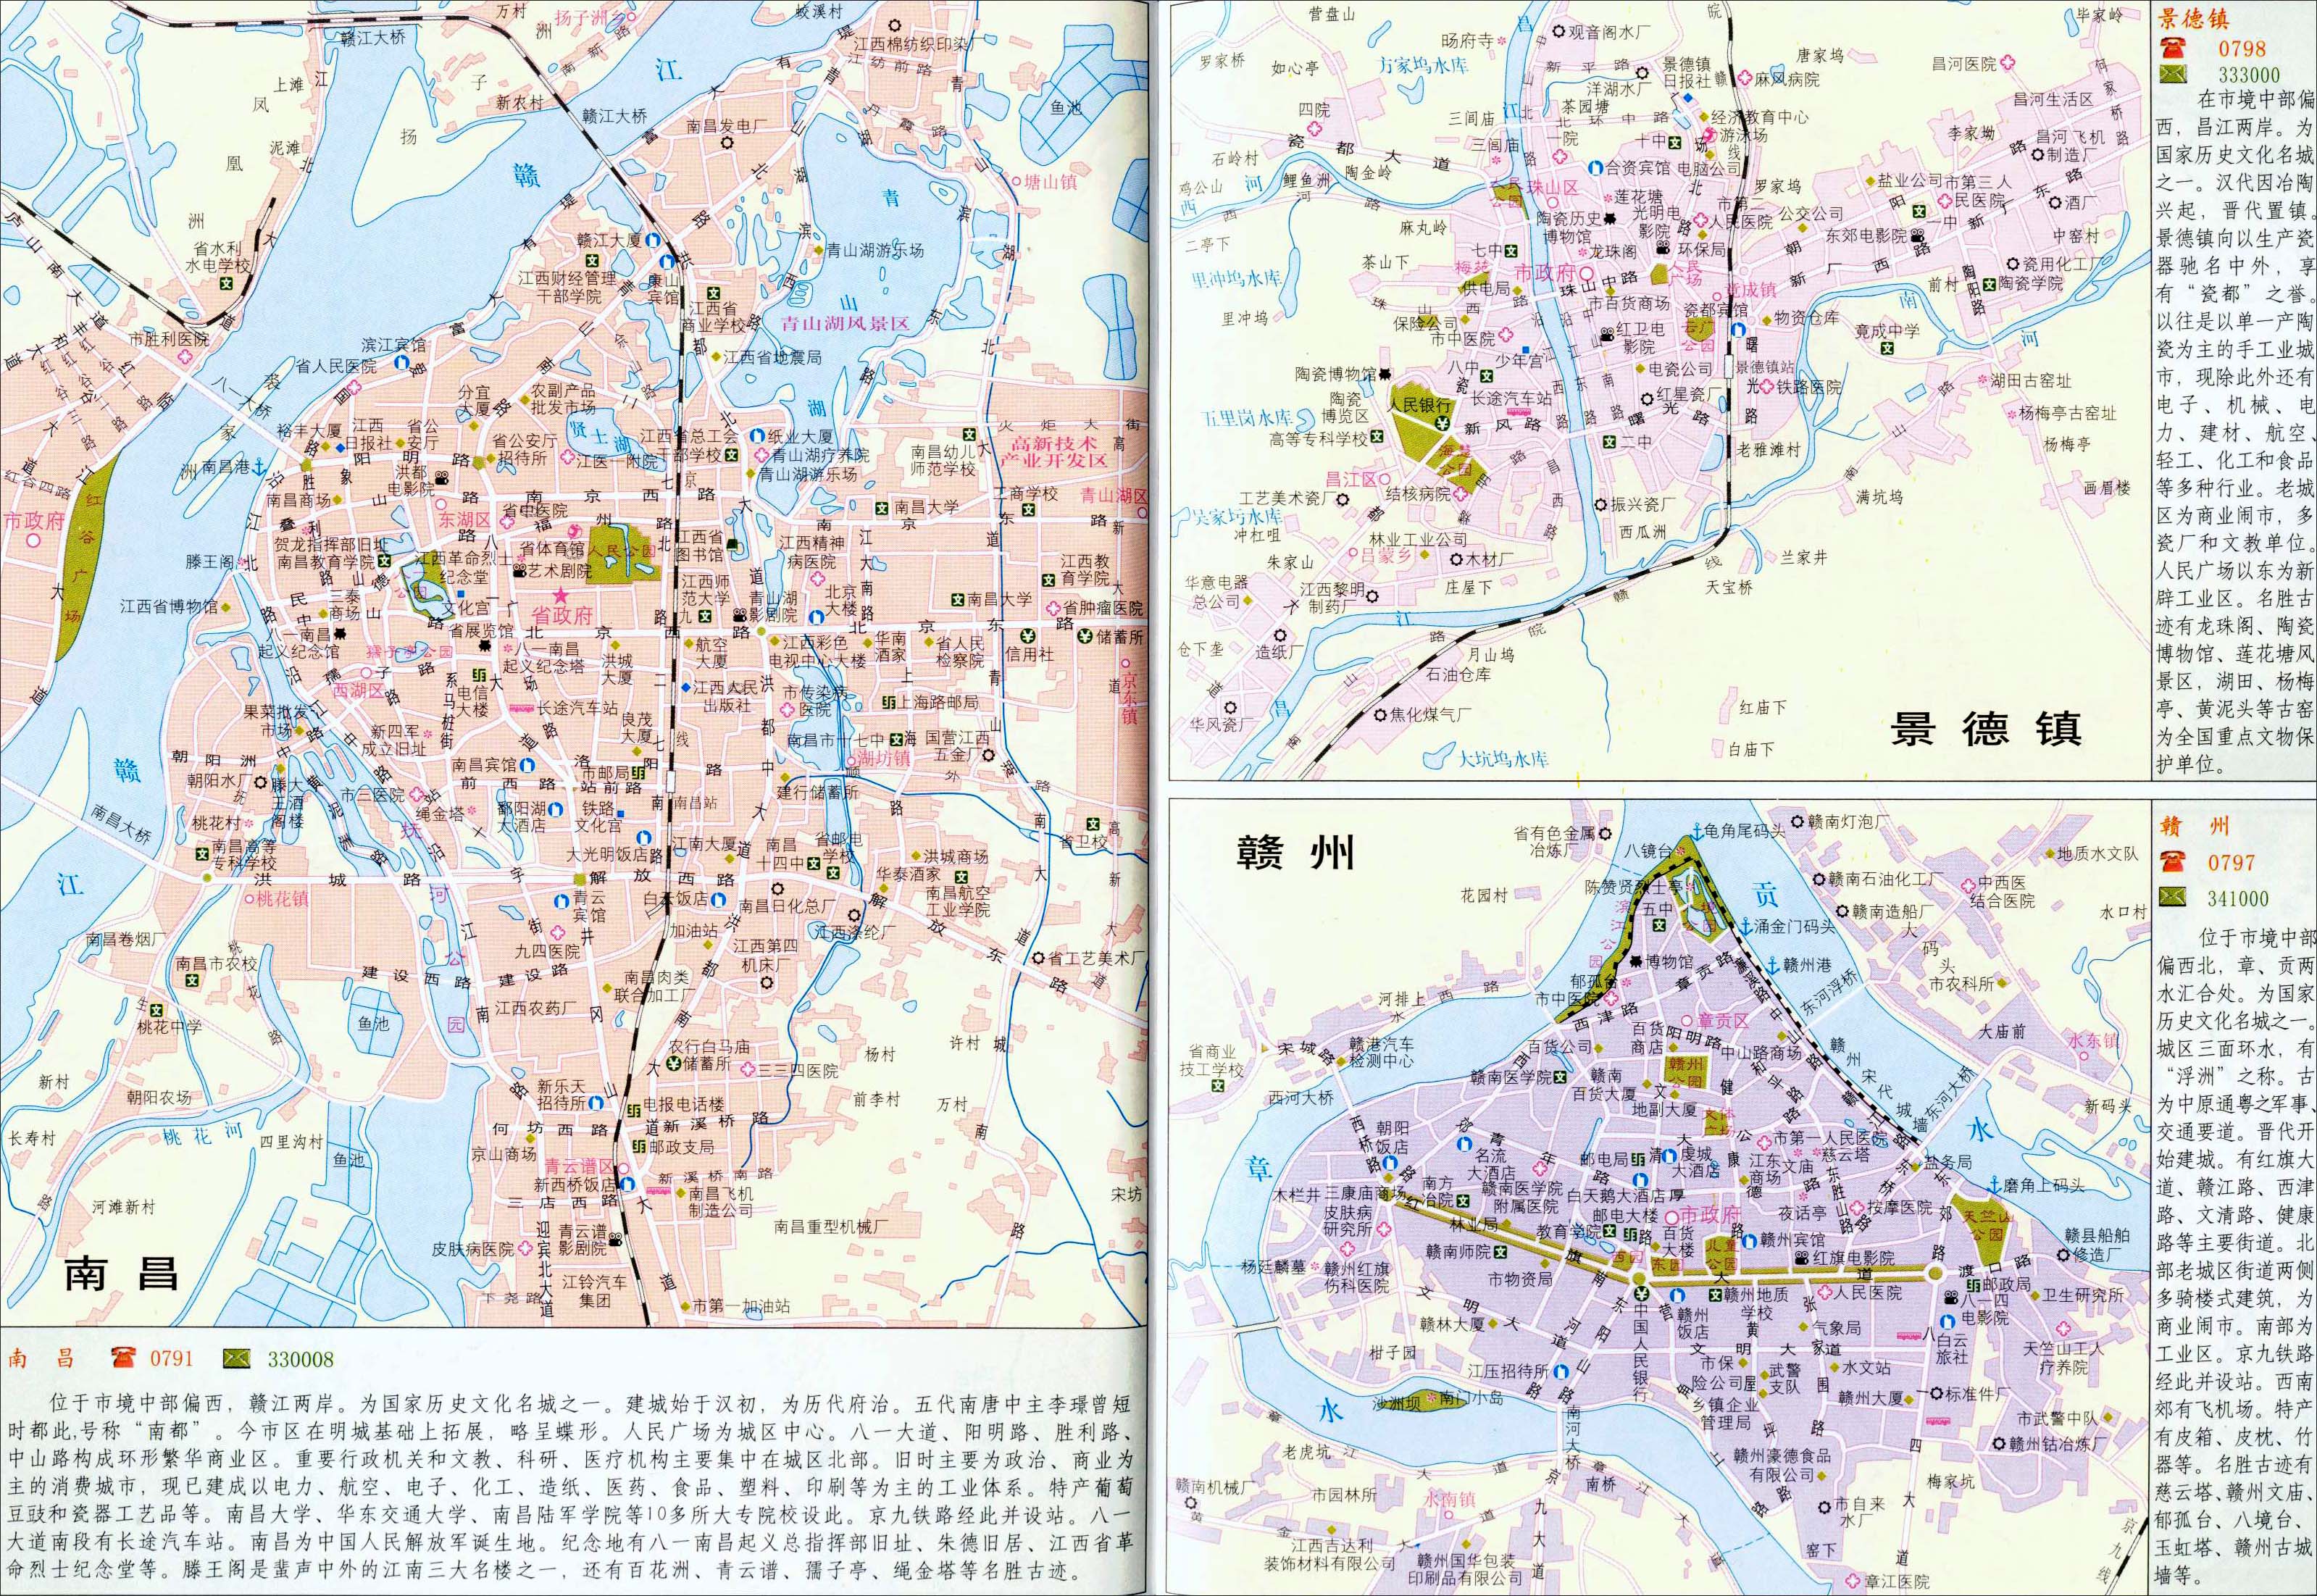 赣州市 | 下一幅地图: 宁都县地图    猜你喜欢: 美式家具 硅藻泥图片